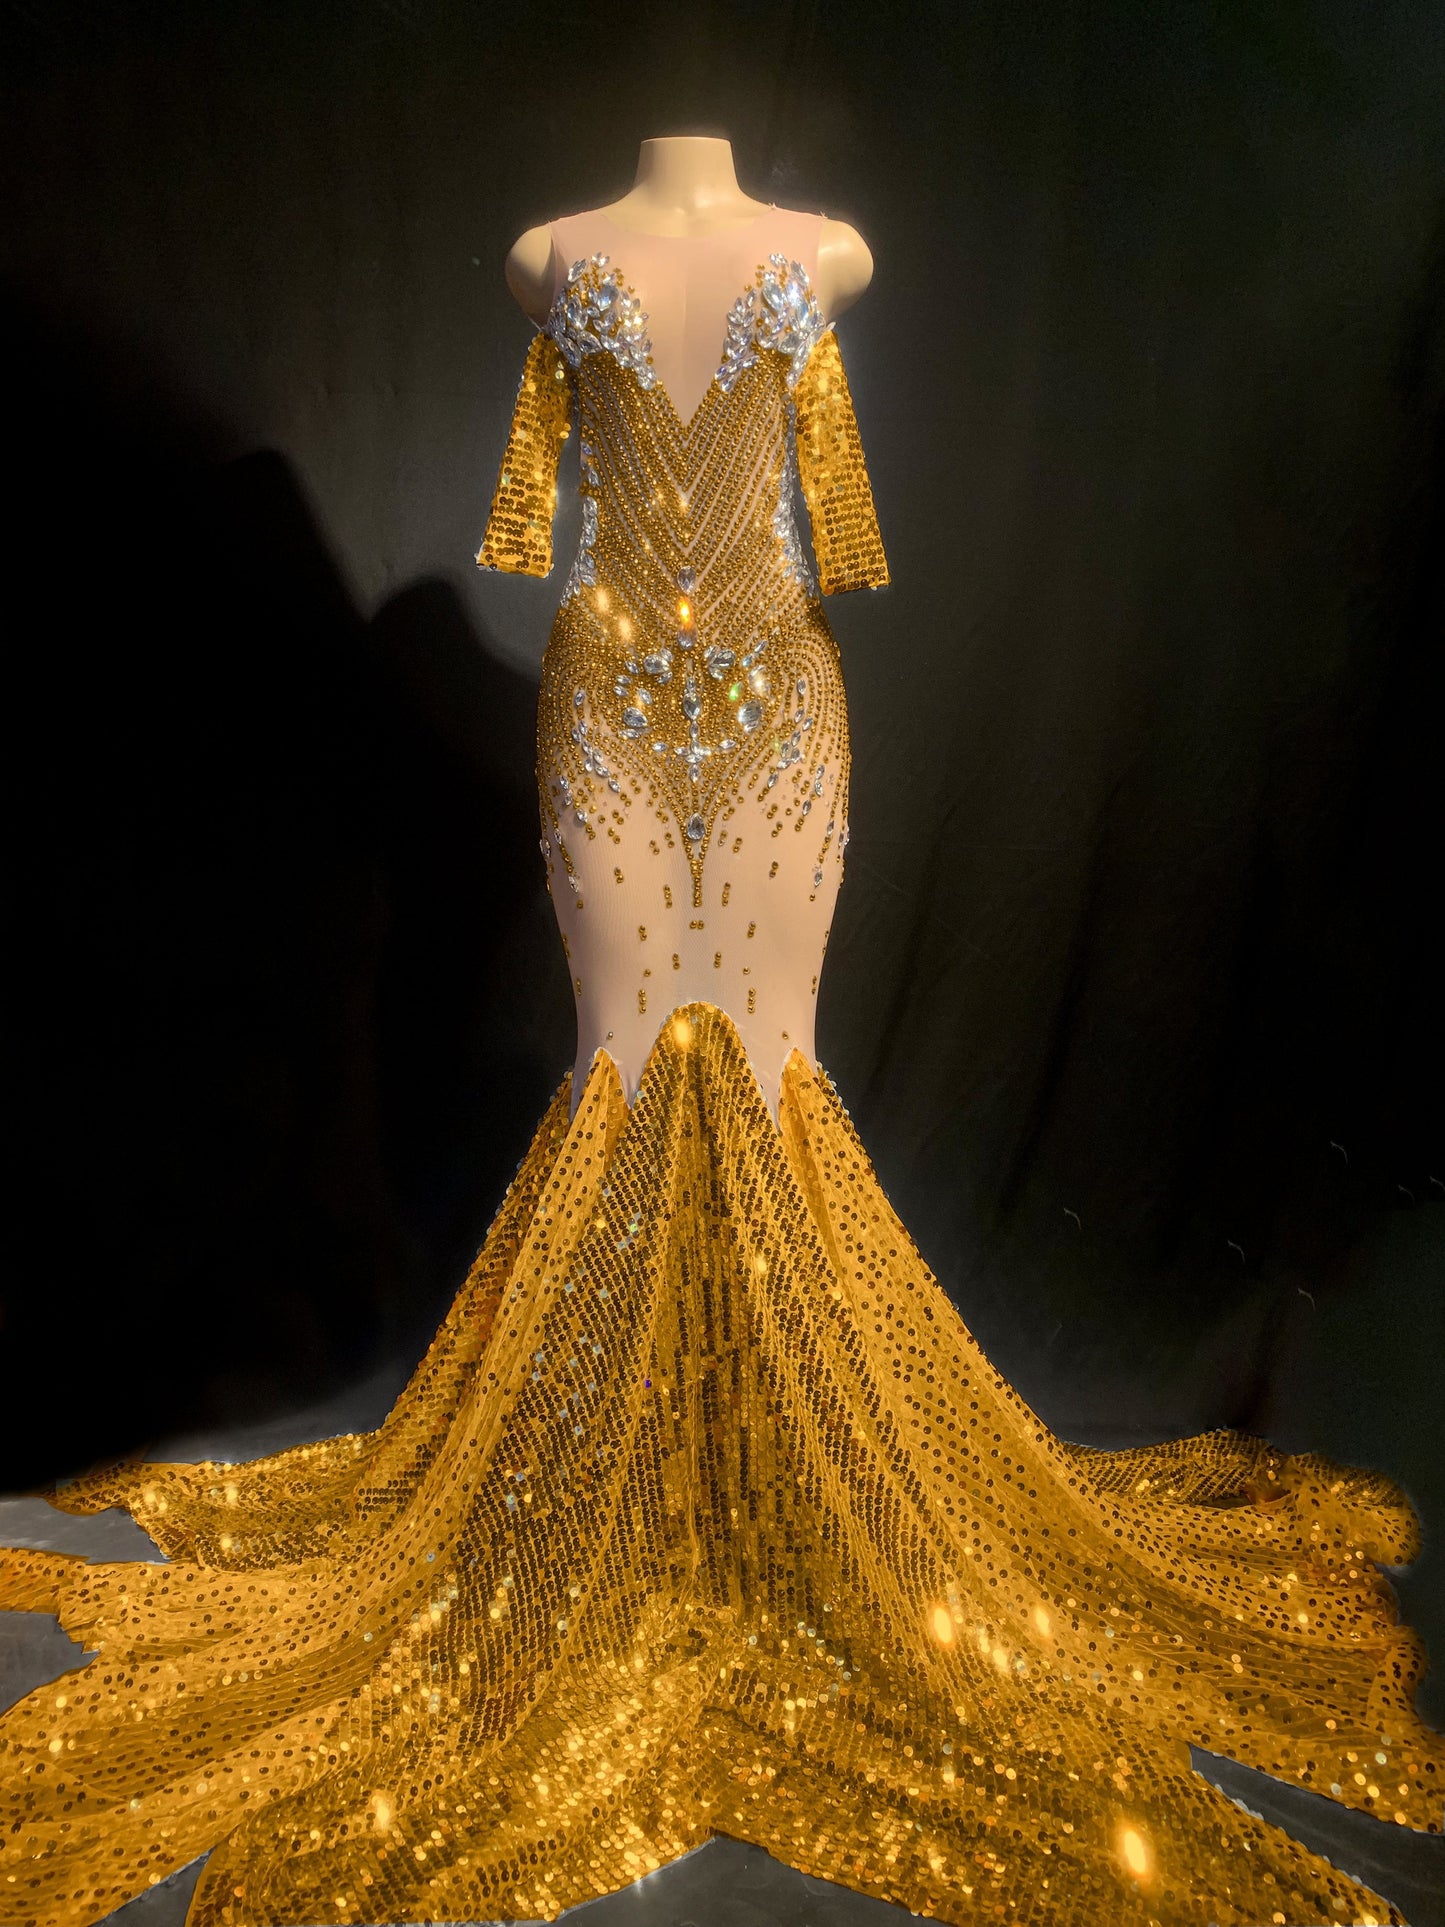 Iced Rainfall Golden Queen dress